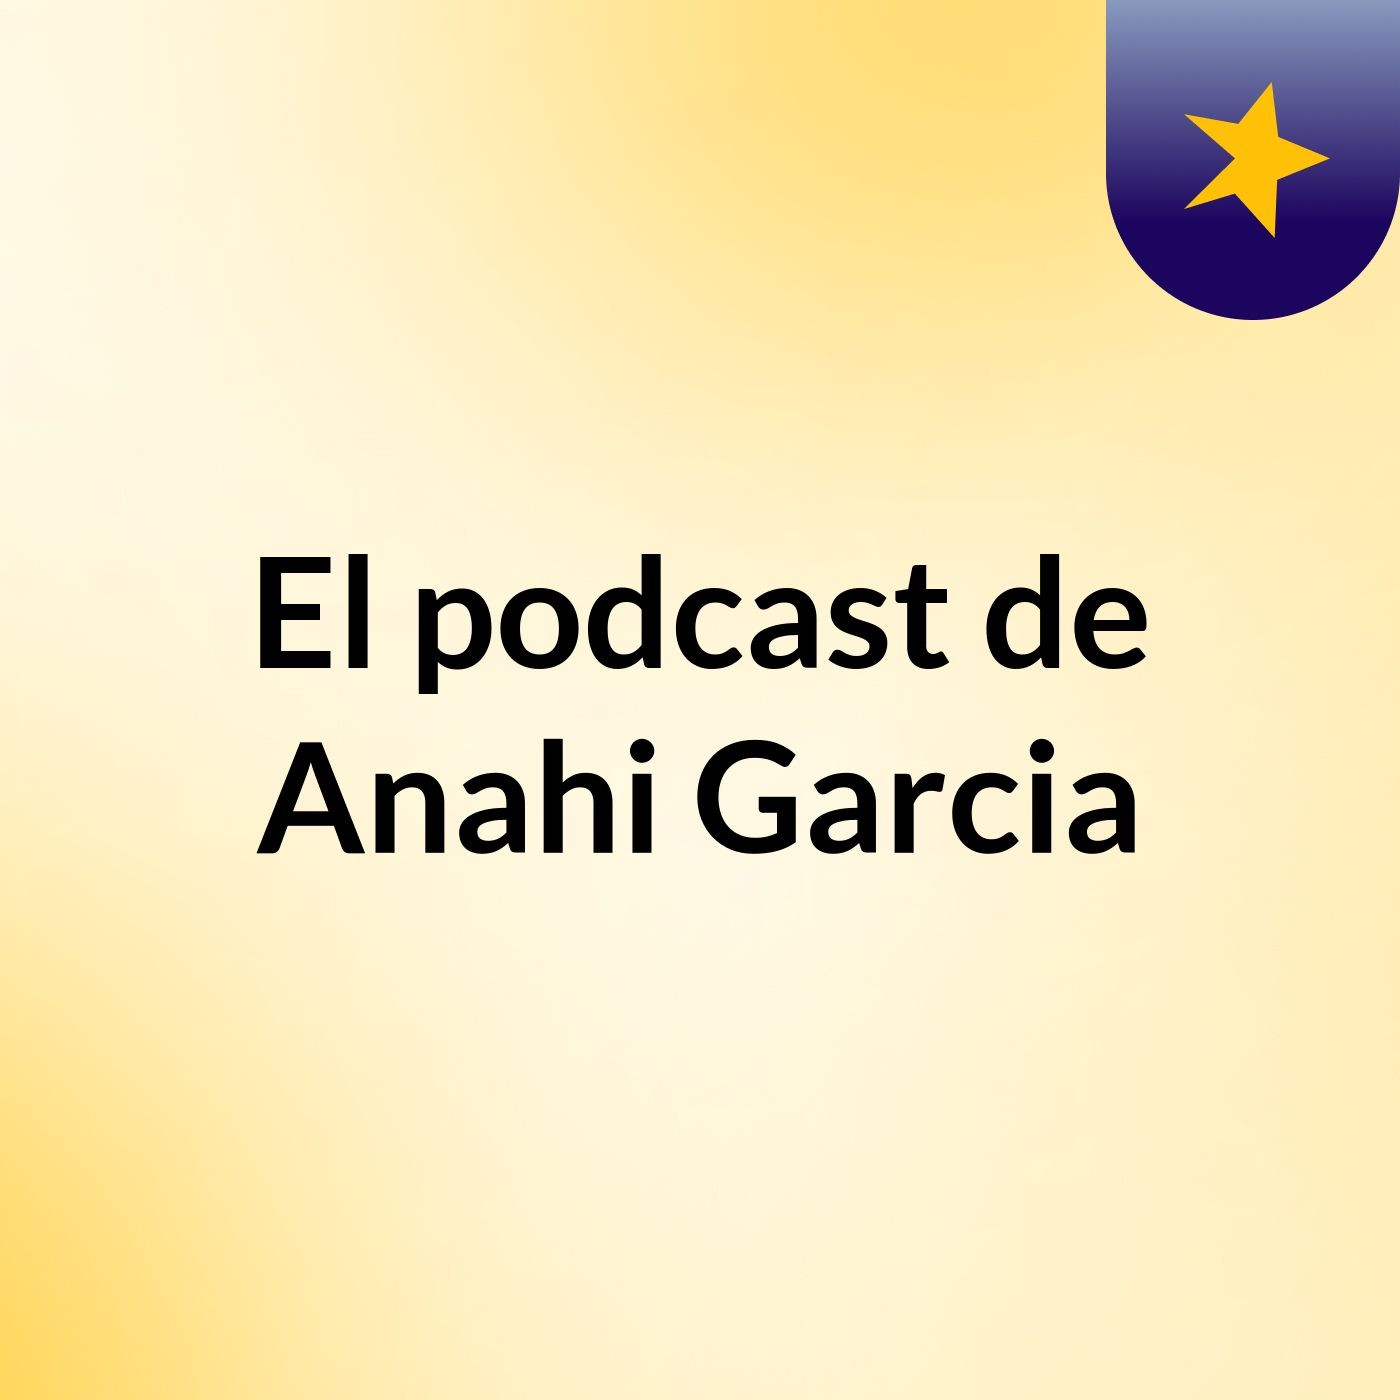 El podcast de Anahi Garcia